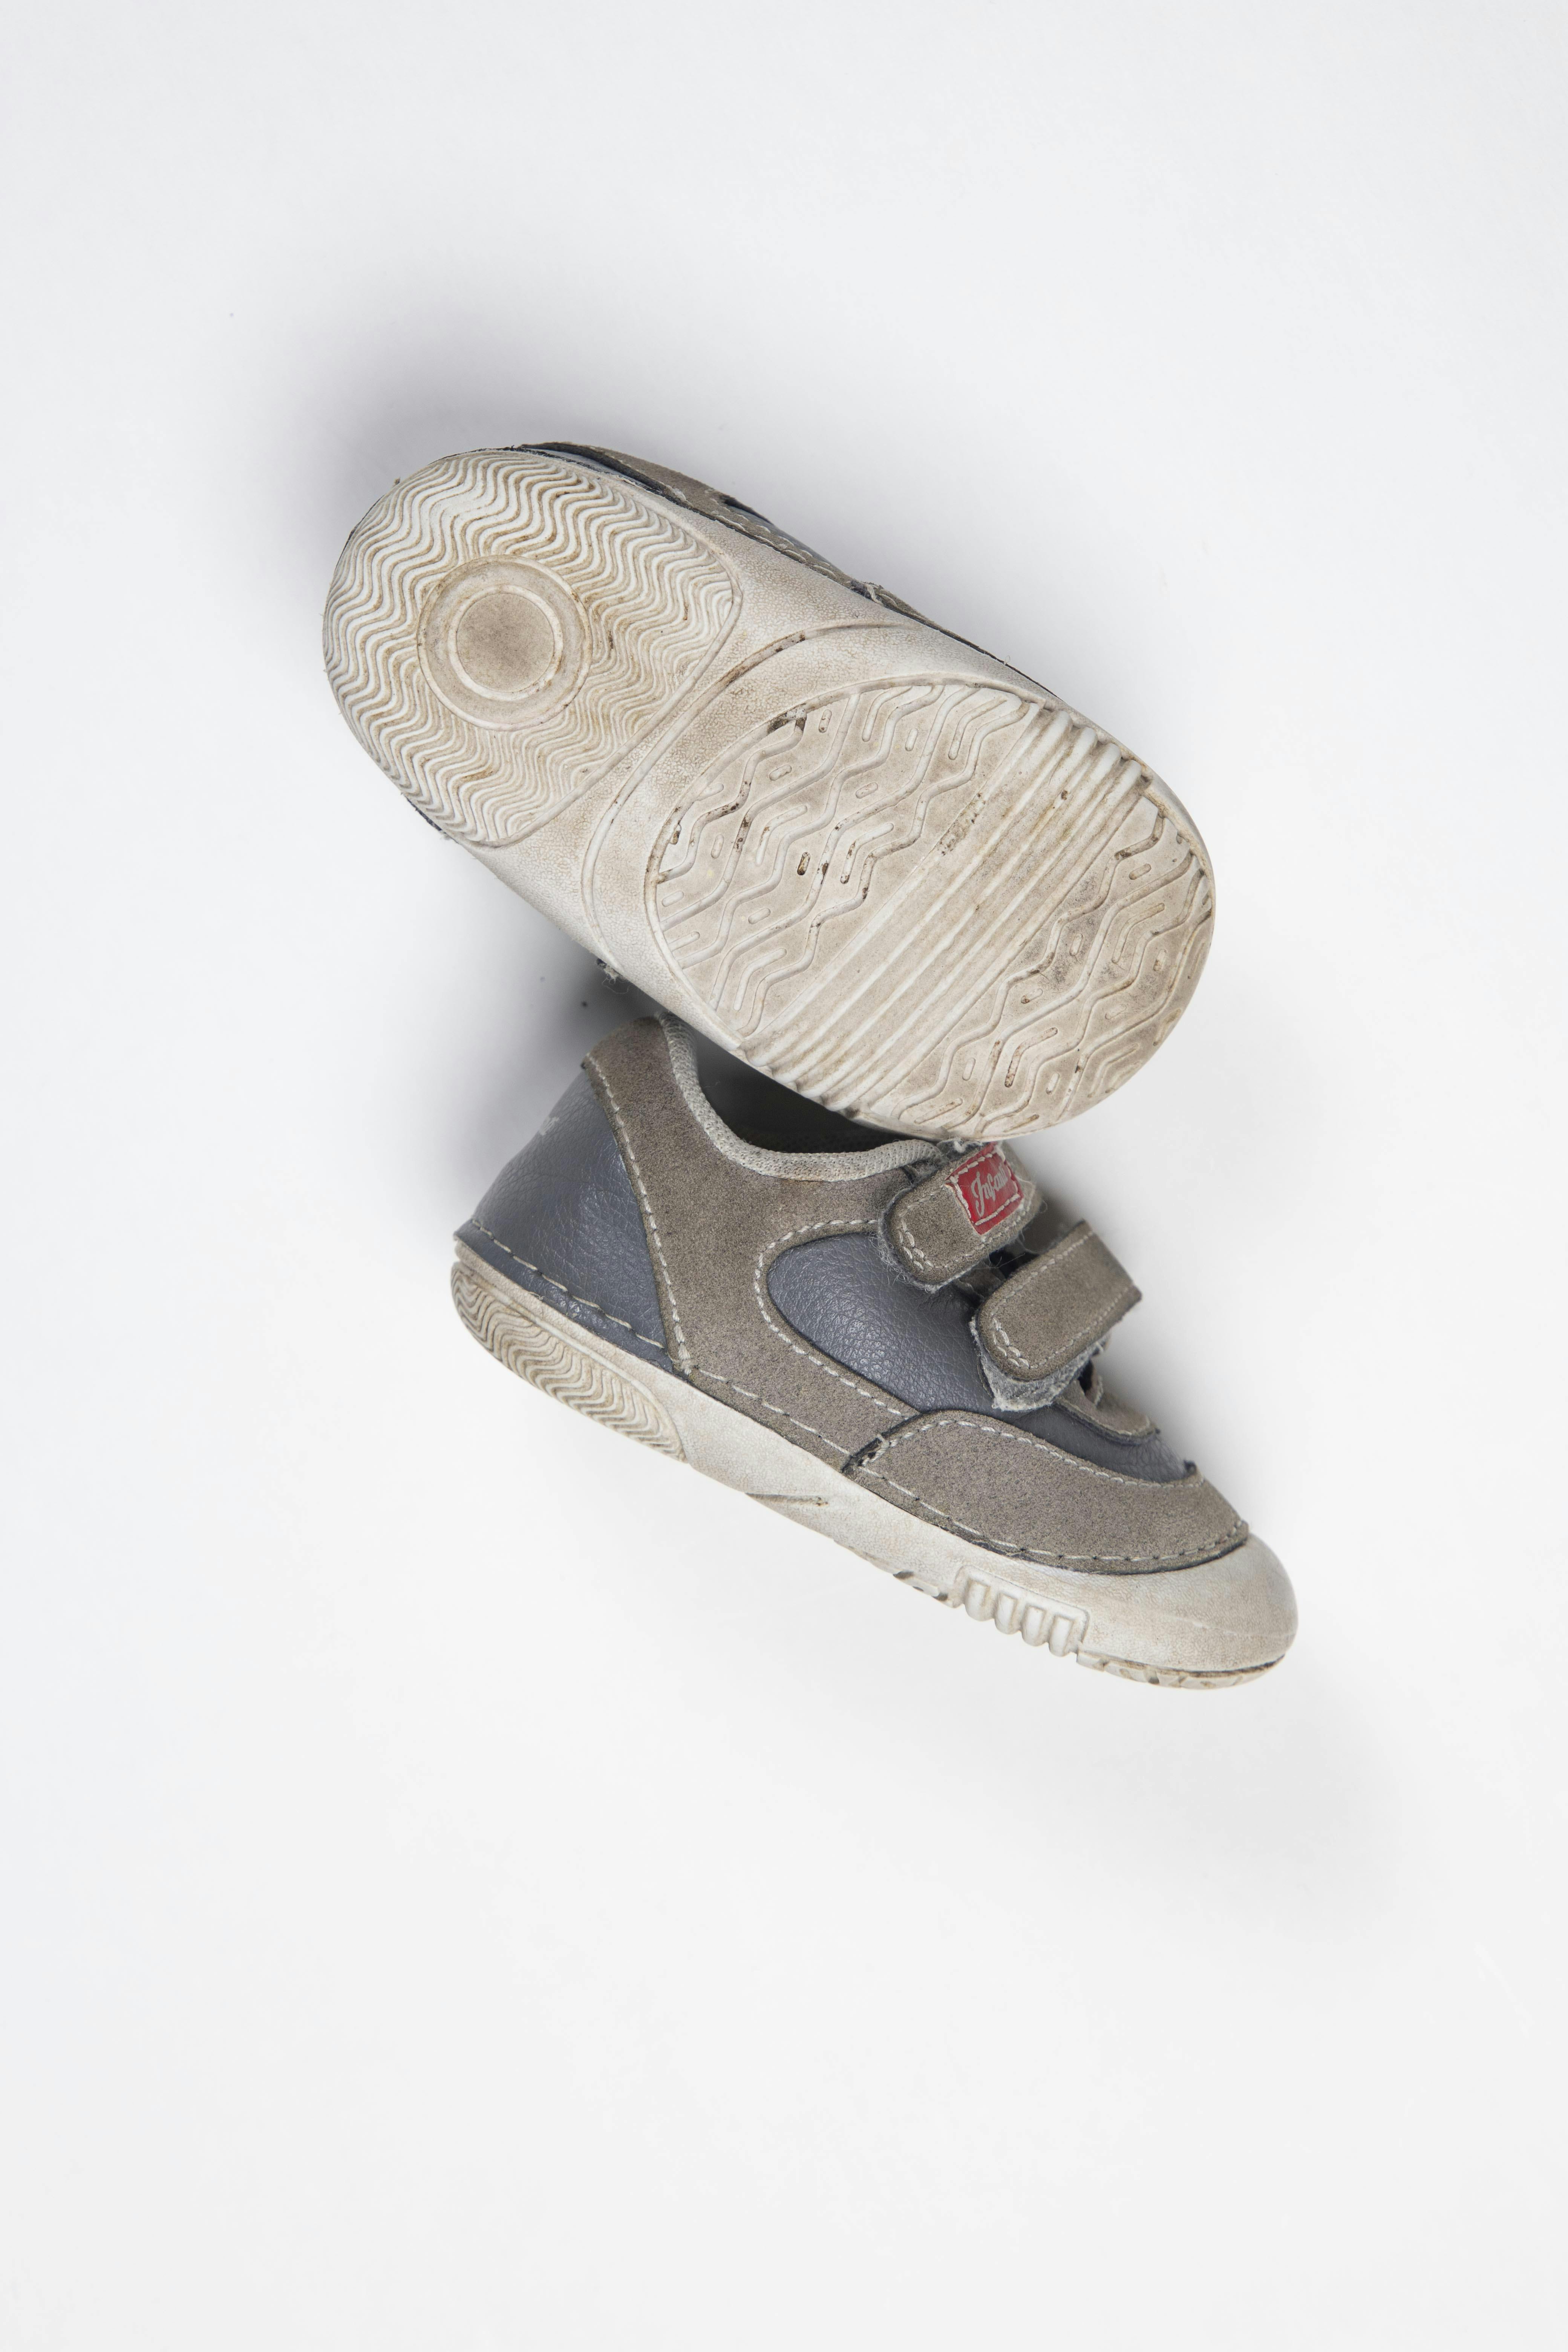 Zapatillas grises con velcro, simil cuero USA 3.5 - Infanti